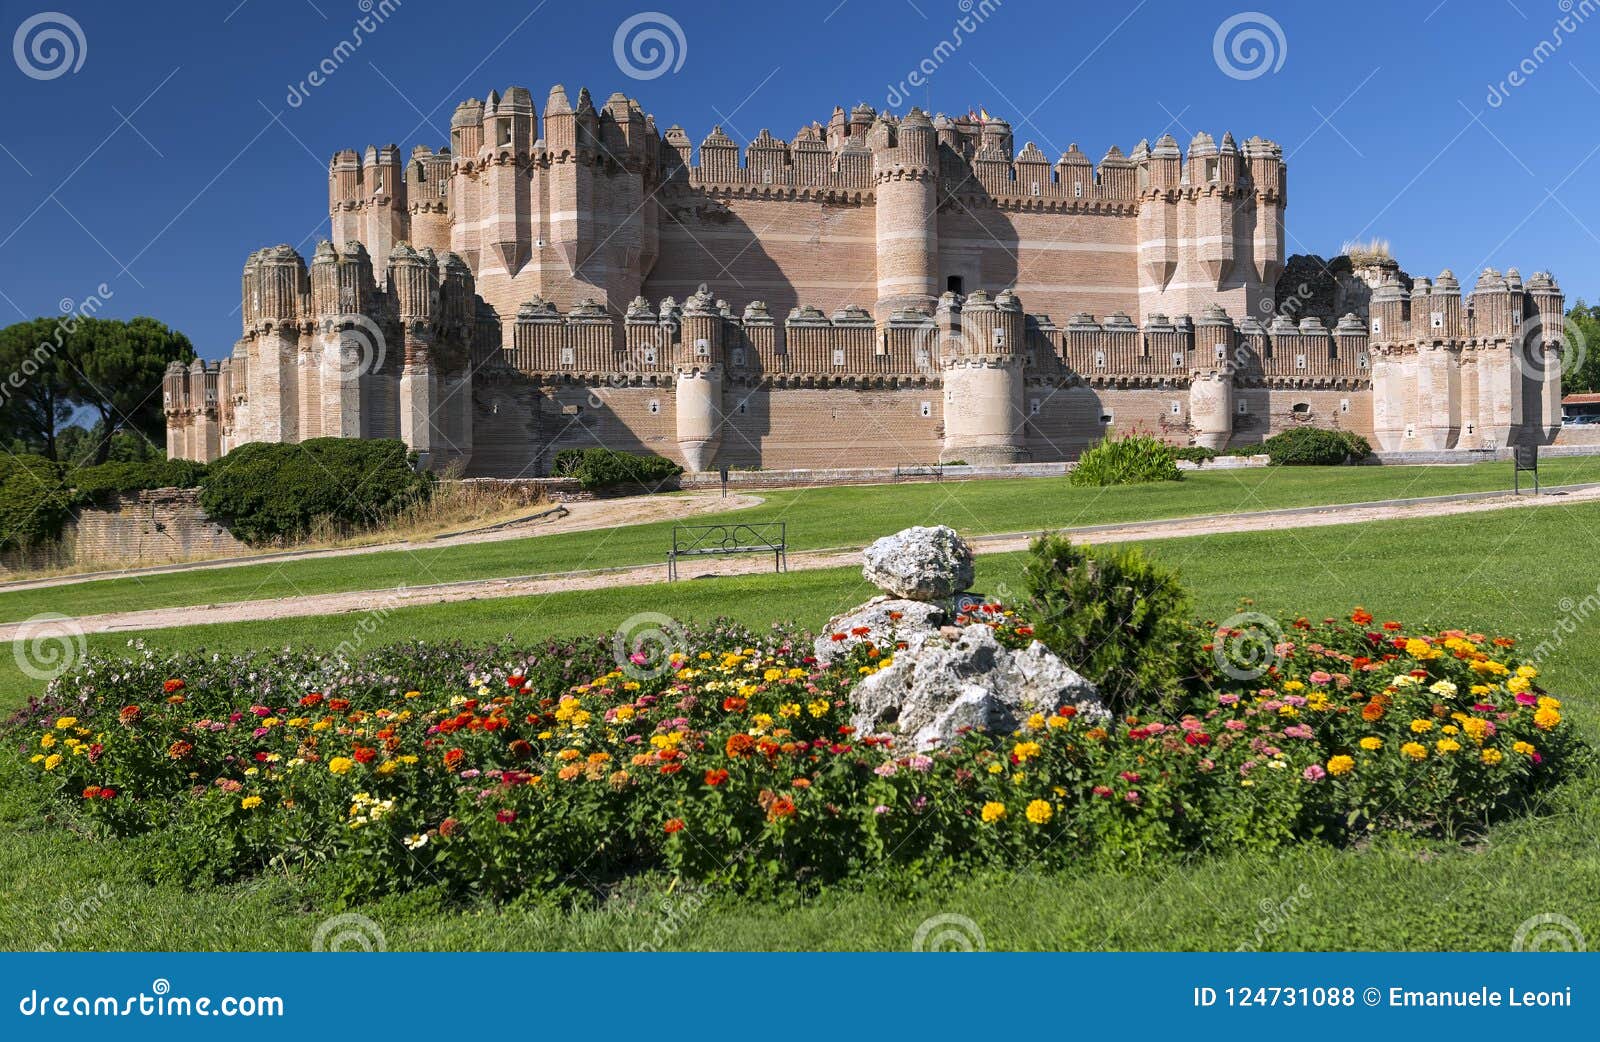 coca castle castillo de coca - 15th century mudejar castle located in the province of segovia, castile and leon, spain.